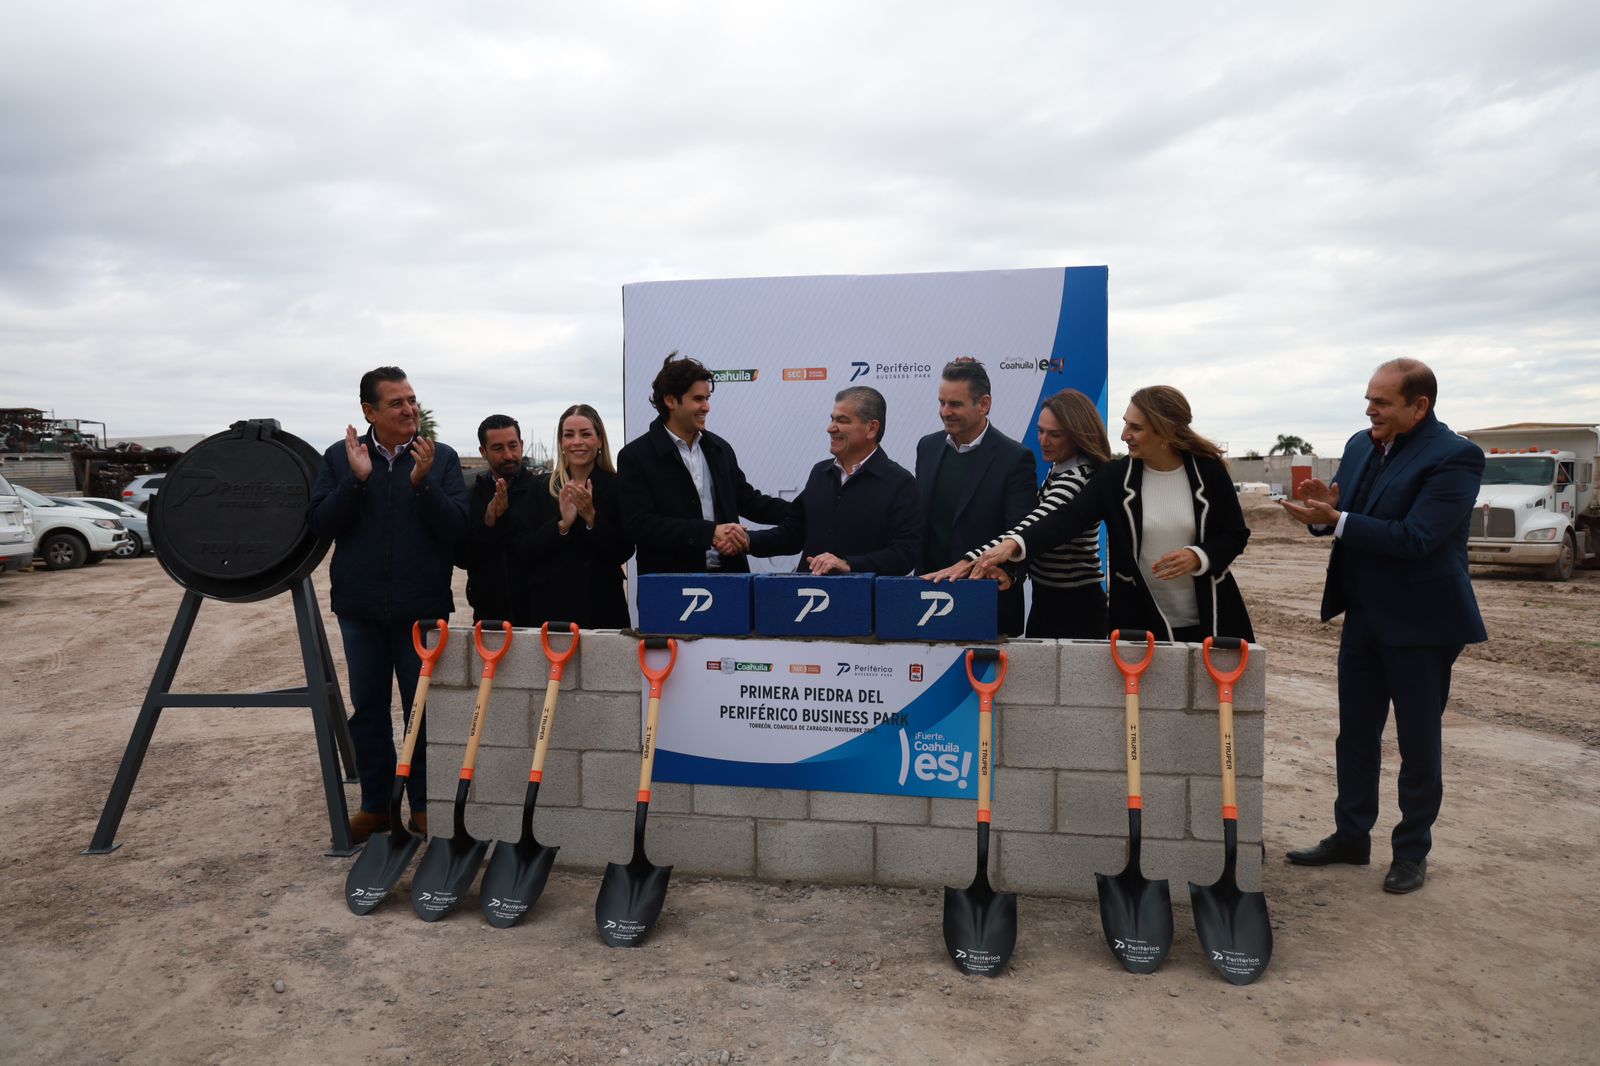 Colocan la primera piedra del Periférico Business Park en Torreón